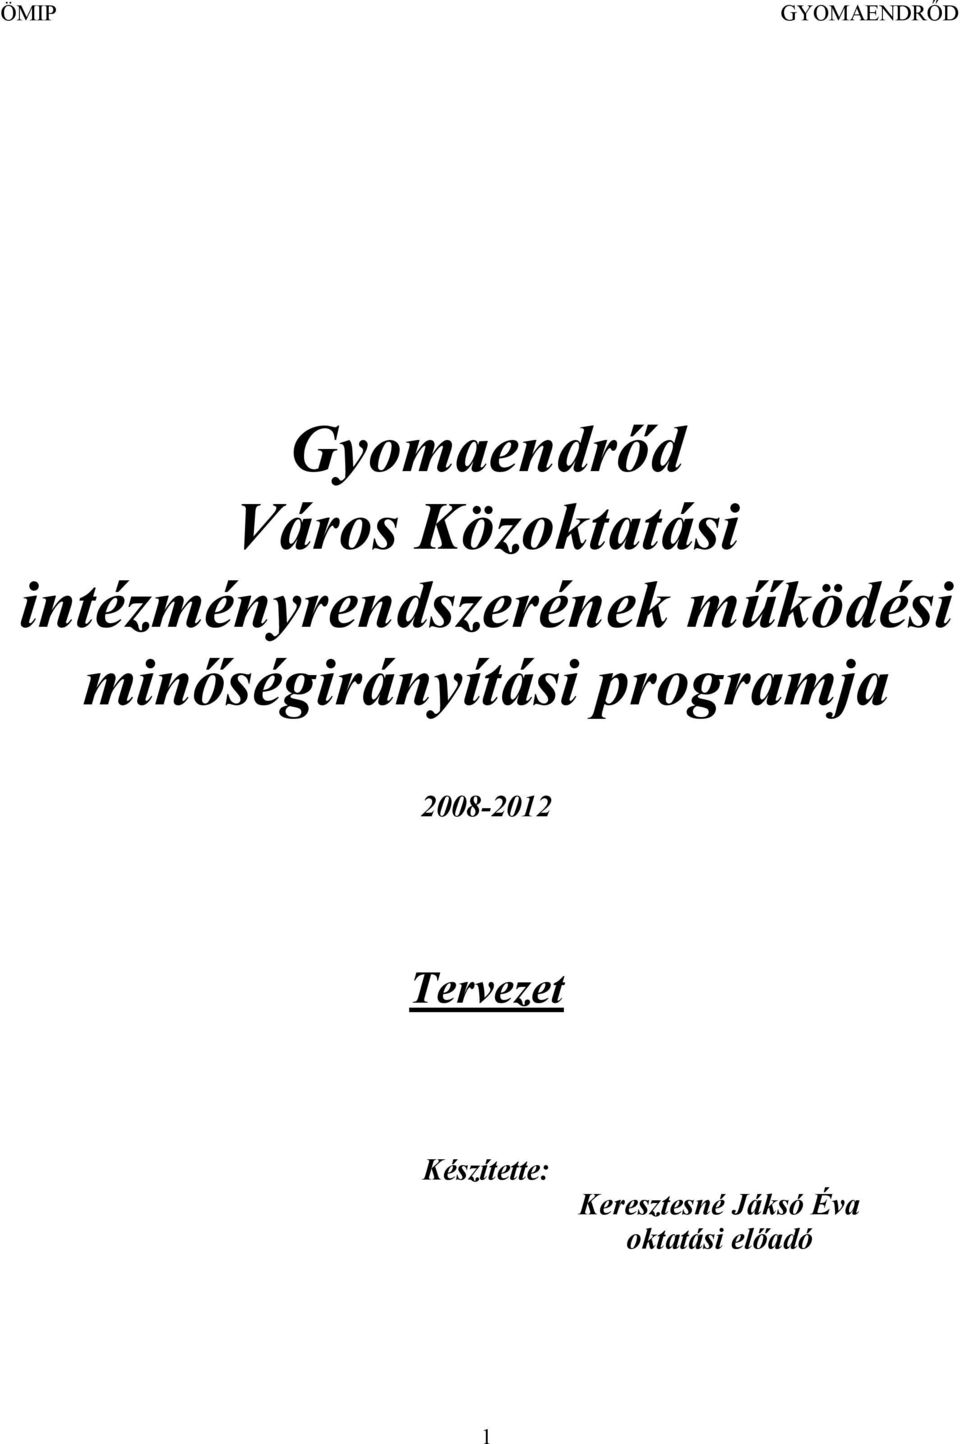 minőségirányítási programja 2008-2012